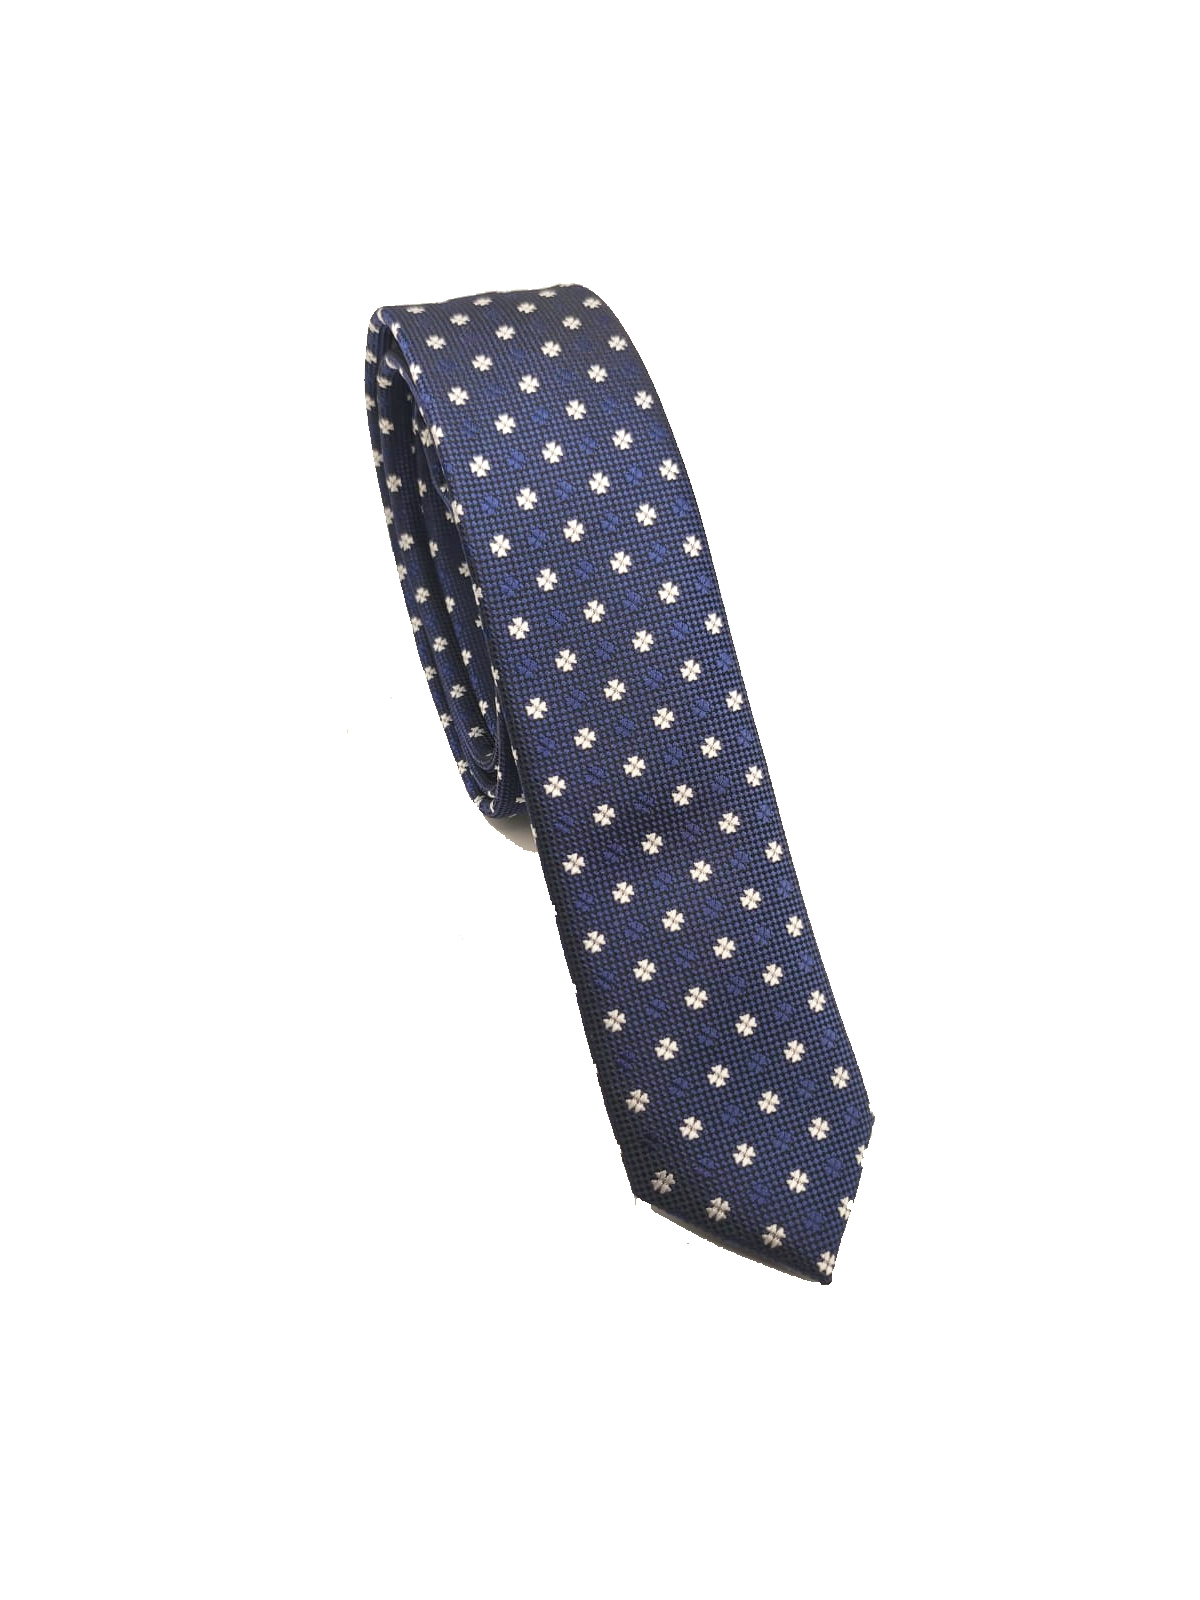 Cravatta blu microfiori - 1